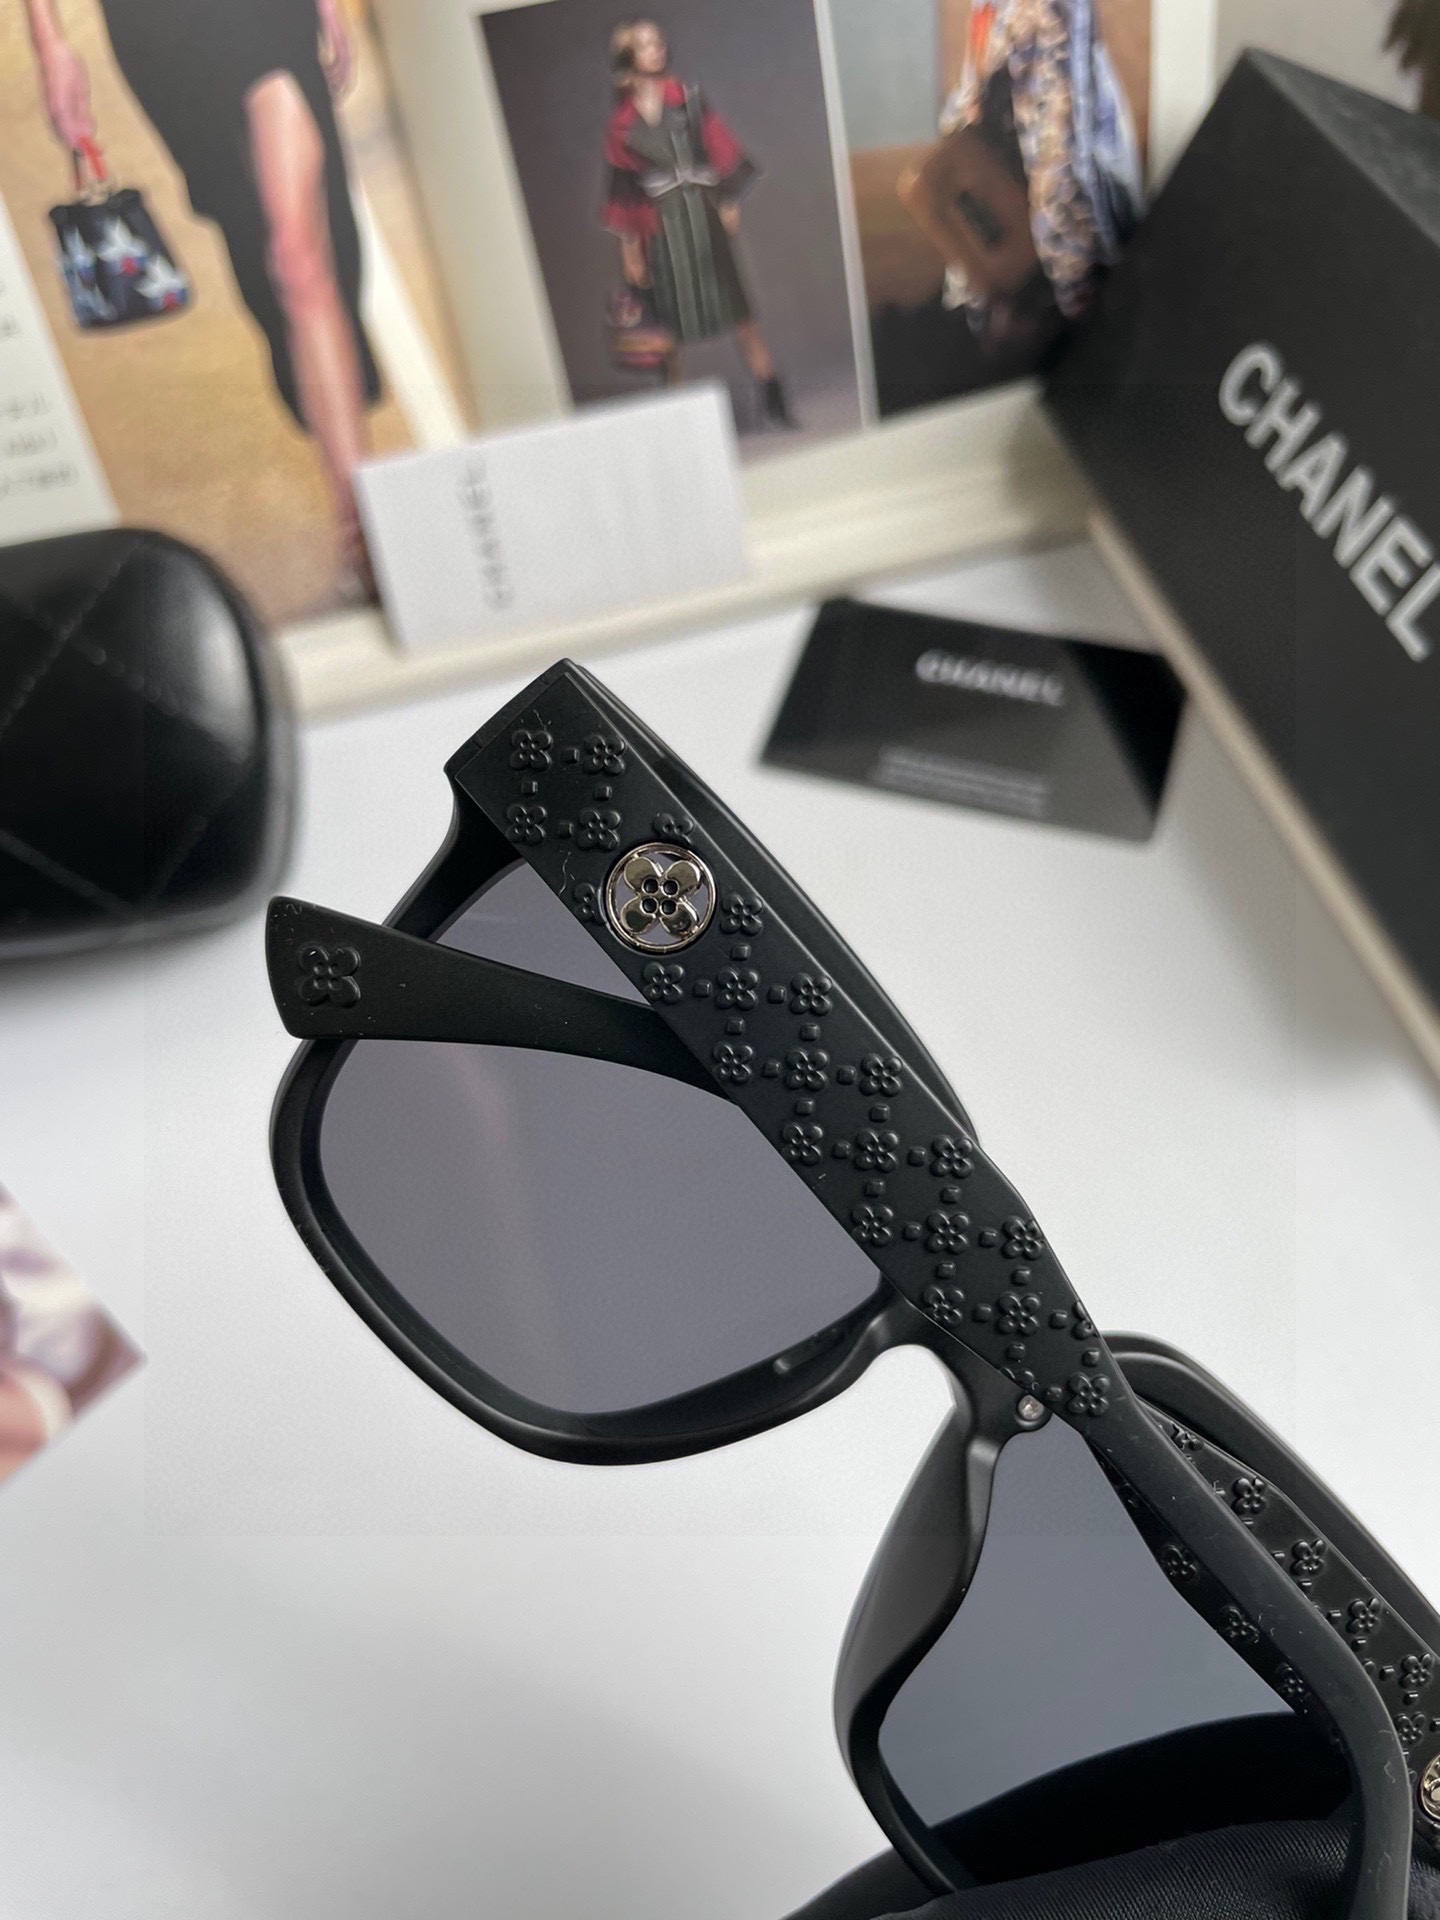 新款CHANEL香奈儿原单品质女士偏光太阳镜TR90材质进口宝丽来高清偏光镜片官网同步发售时尚大气出行必